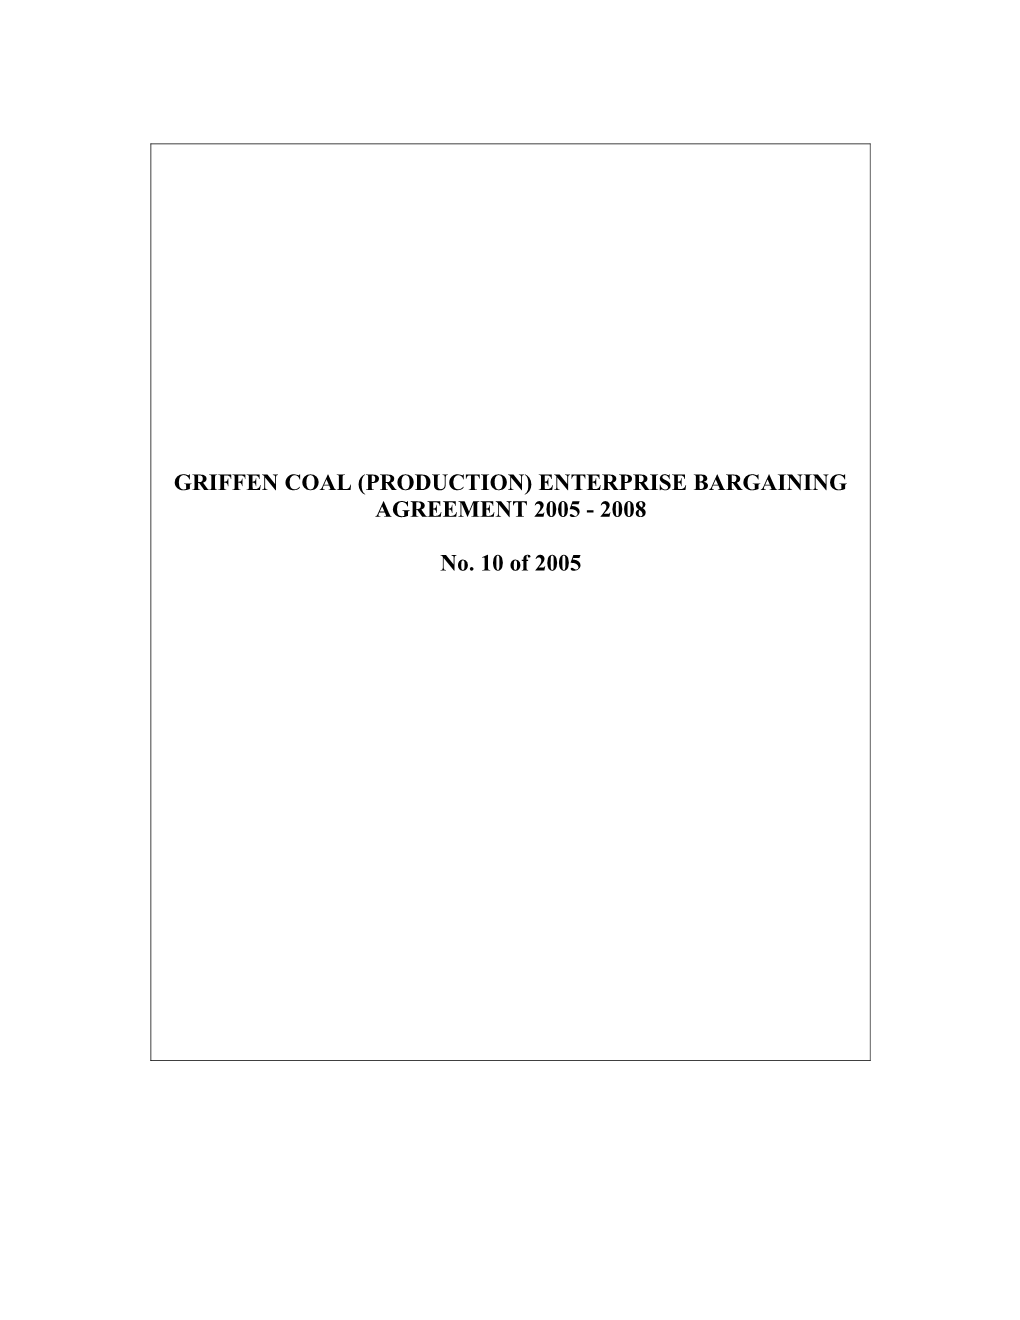 Griffen Coal (Production) Enterprise Bargaining Agreement 2005 - 2008 110